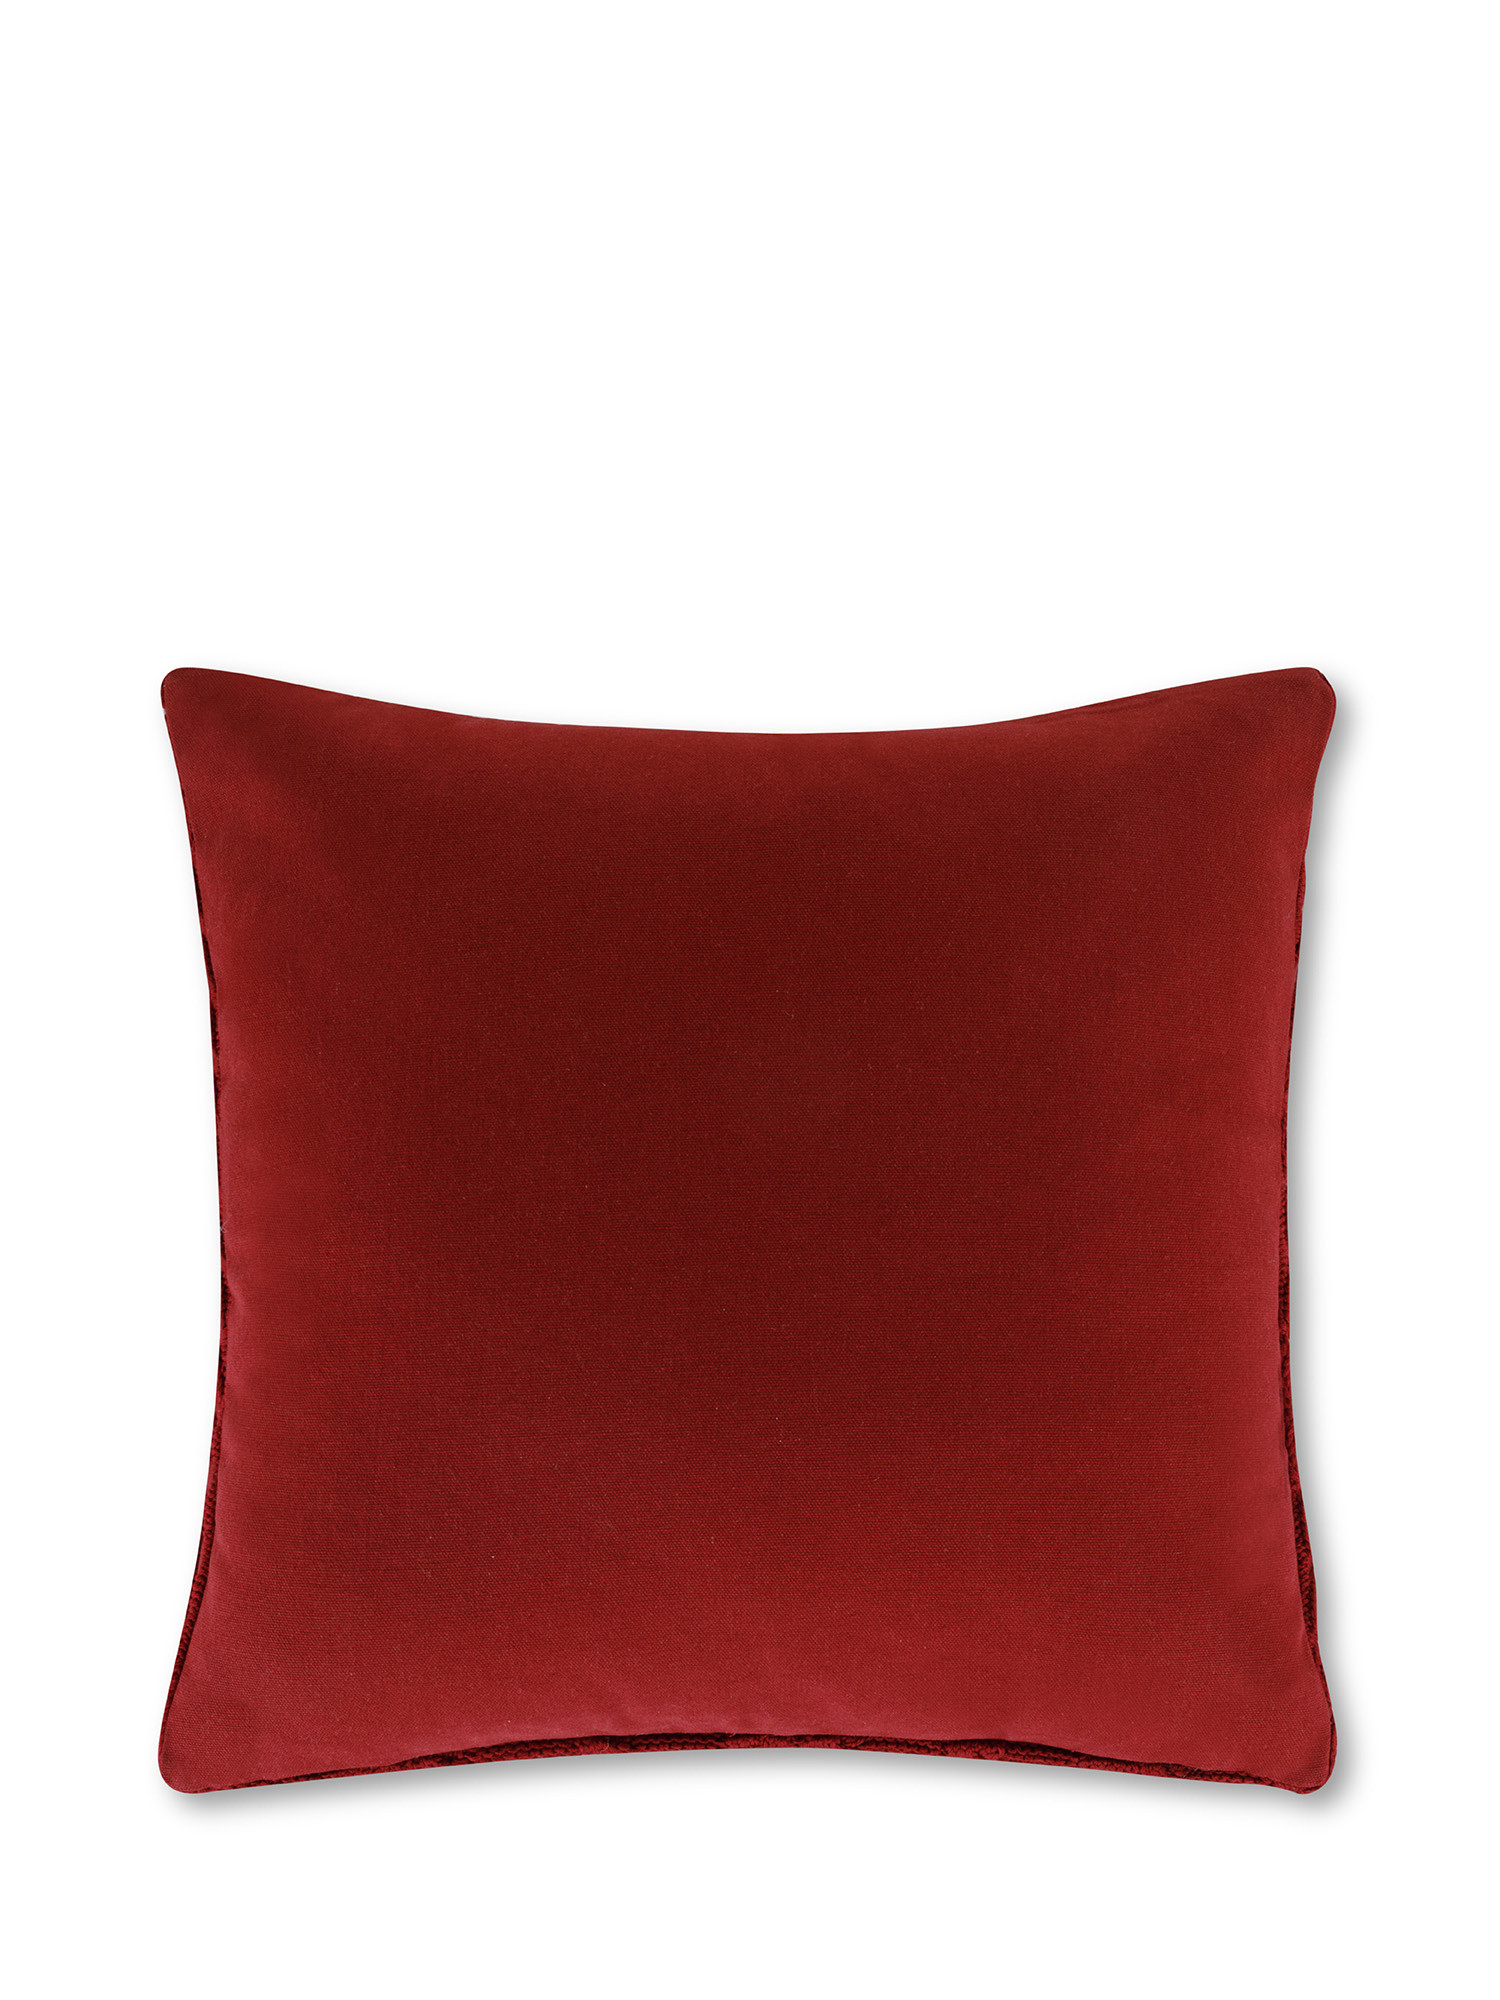 Cuscino in maglia motivo trecce 45x45 cm, Rosso, large image number 1